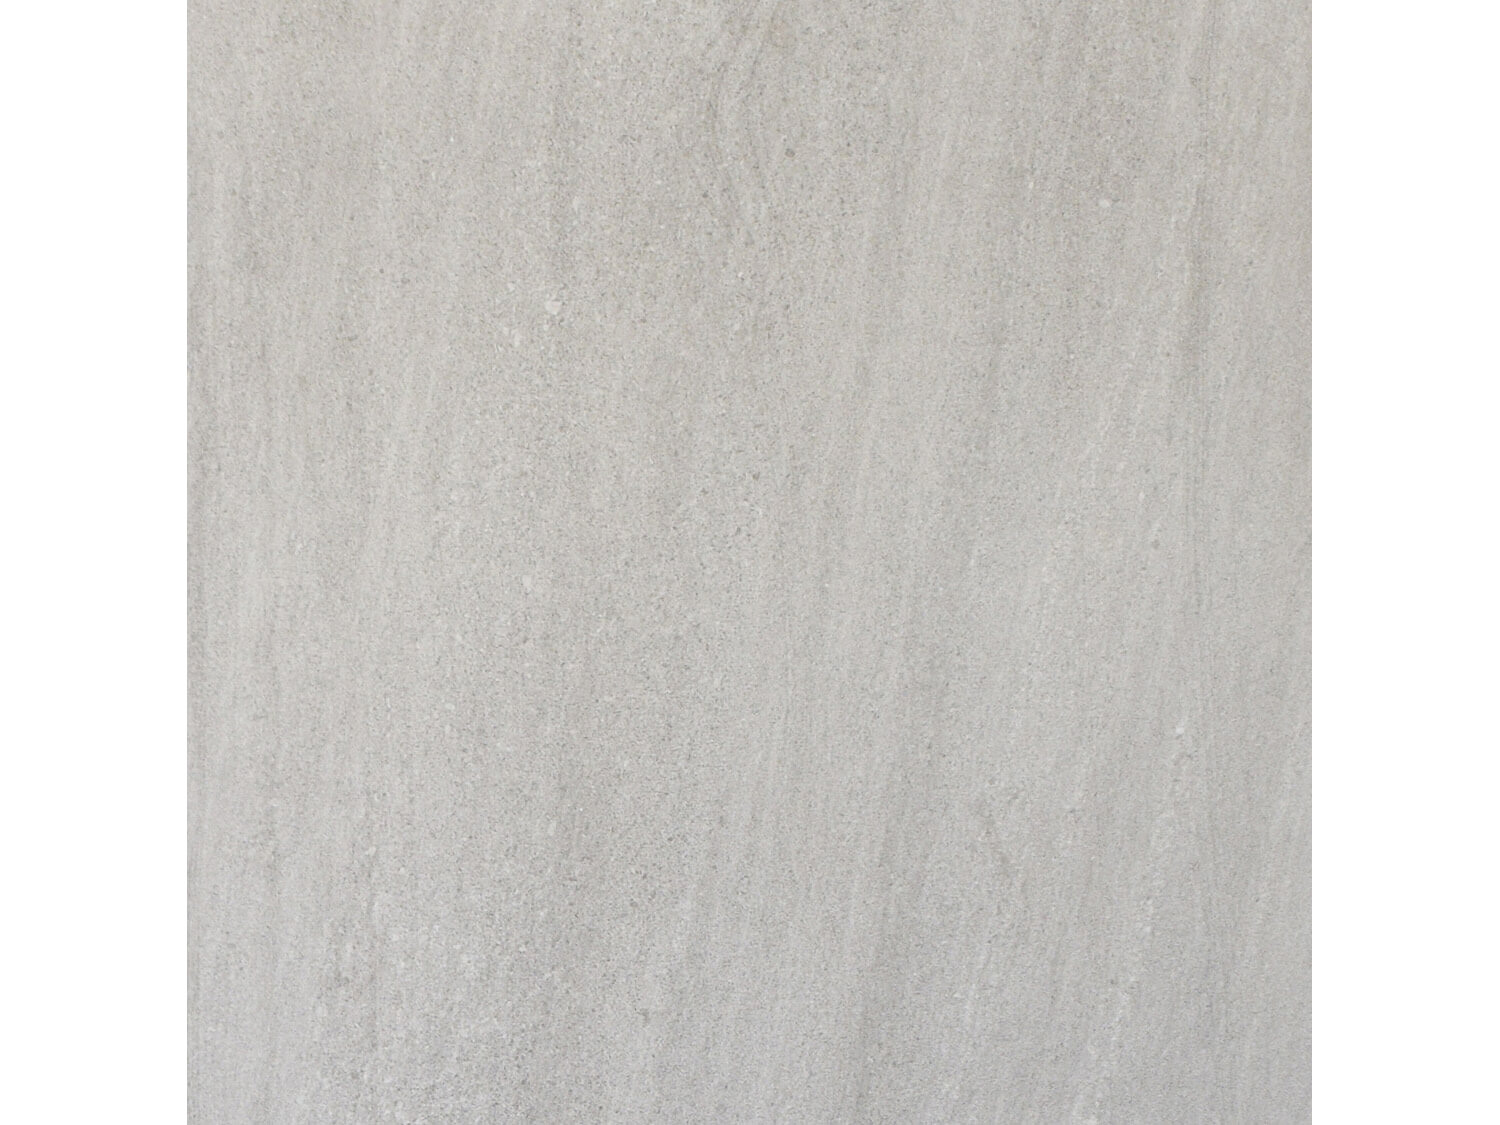 Sand Stone Light Grey Ceramic Floor Tile - 600 x 600mm